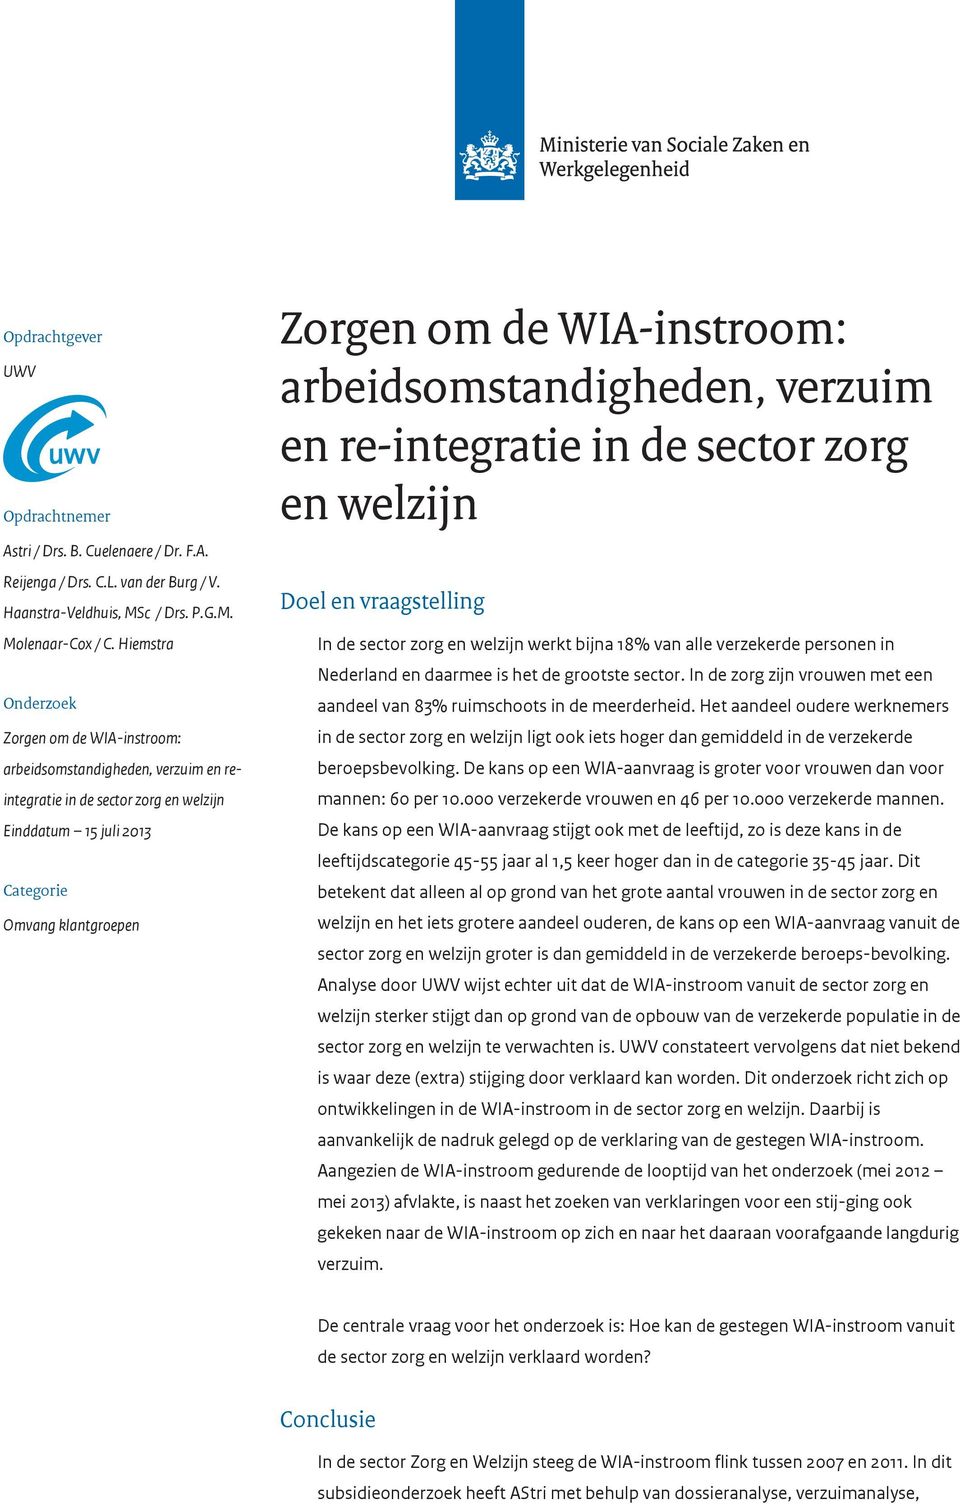 WIA-instroom: arbeidsomstandigheden, verzuim en re-integratie in de sector zorg en welzijn Doel en vraagstelling In de sector zorg en welzijn werkt bijna 18% van alle verzekerde personen in Nederland